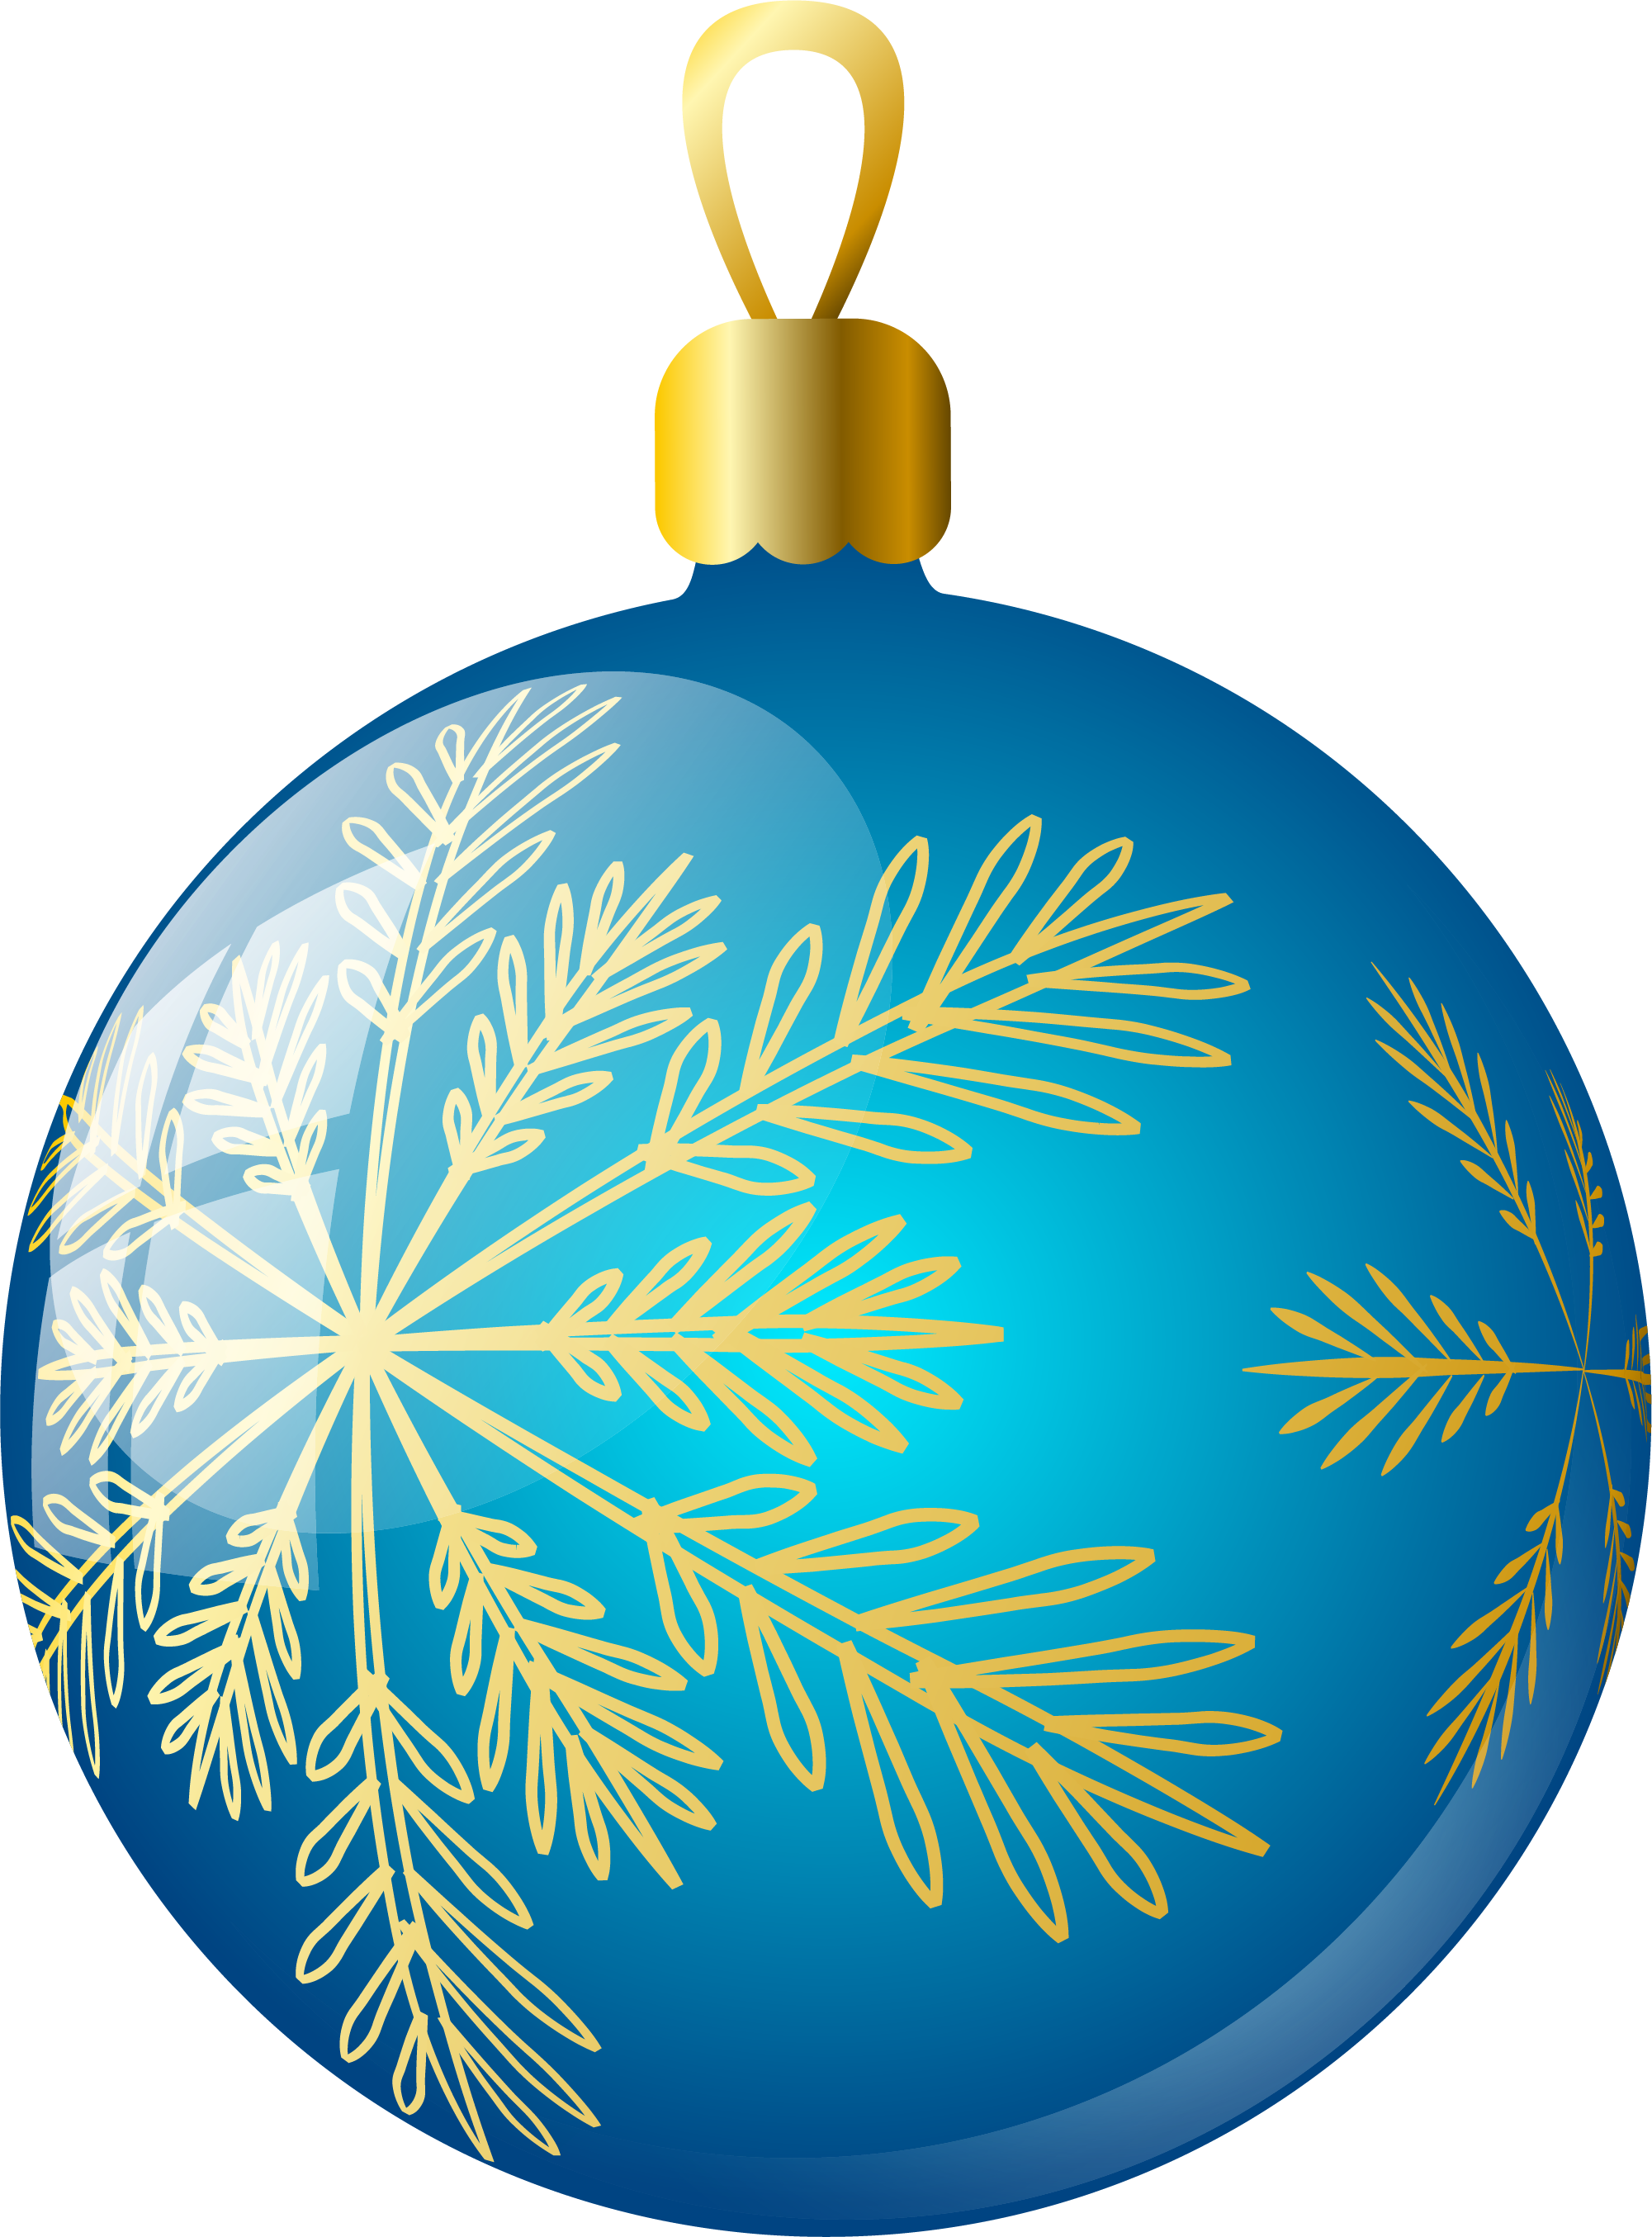 सांगली जिल्हा मध्यवर्ती सहकारी बँक लि - Christmas Ornament (2001x2709)